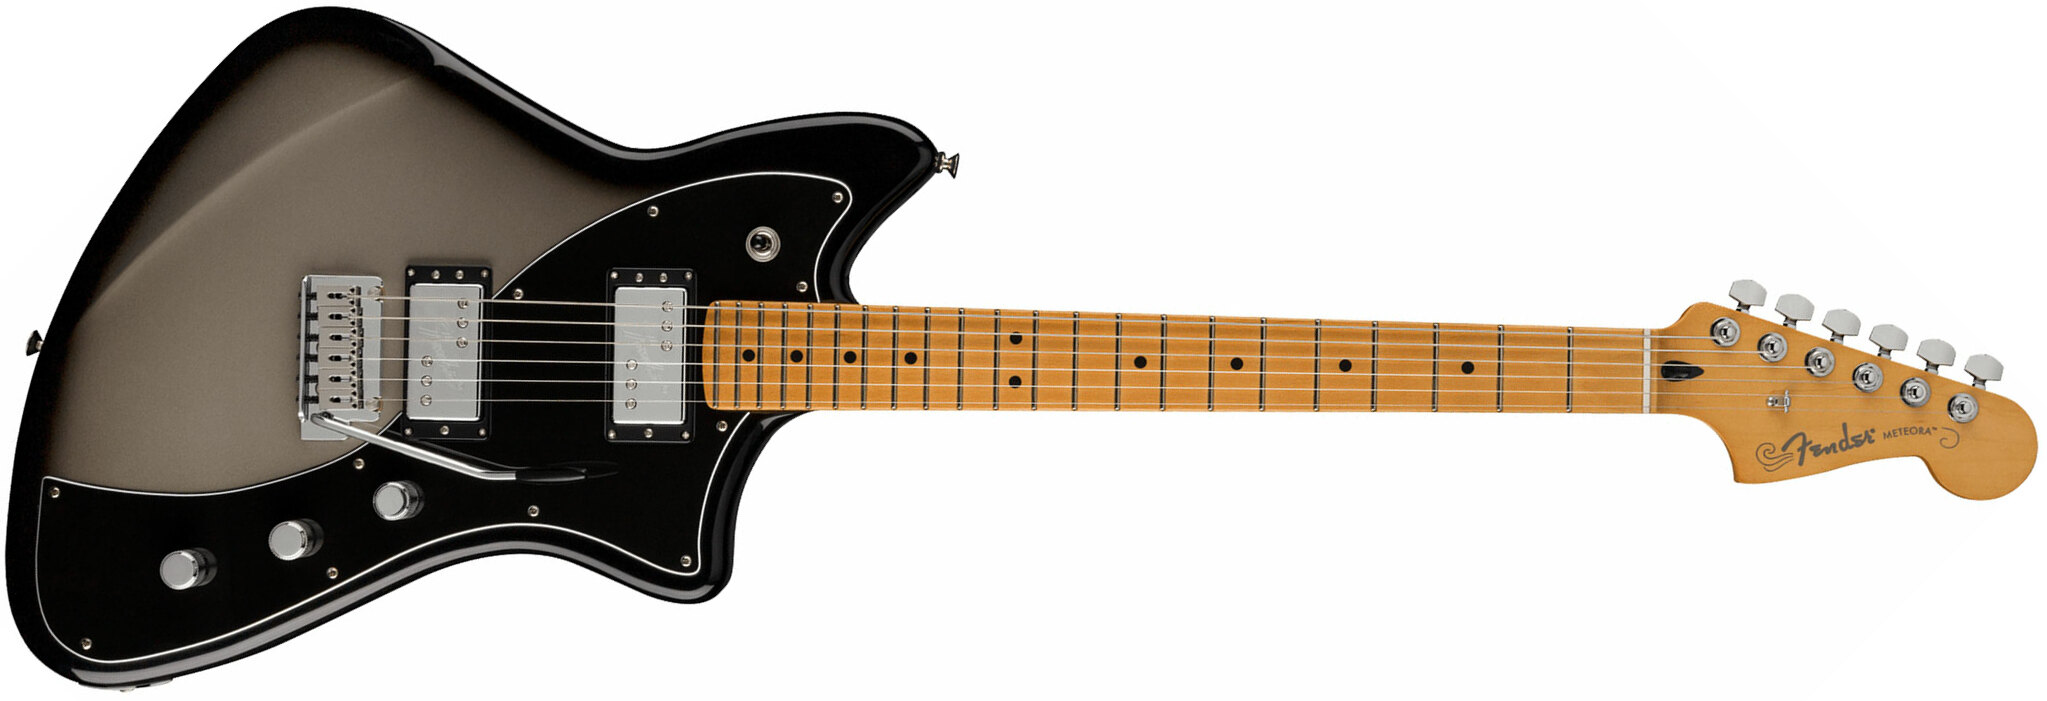 Fender Meteora Player Plus Hh Mex 2h Ht Mn - Silver Burst - Retro-rock elektrische gitaar - Main picture